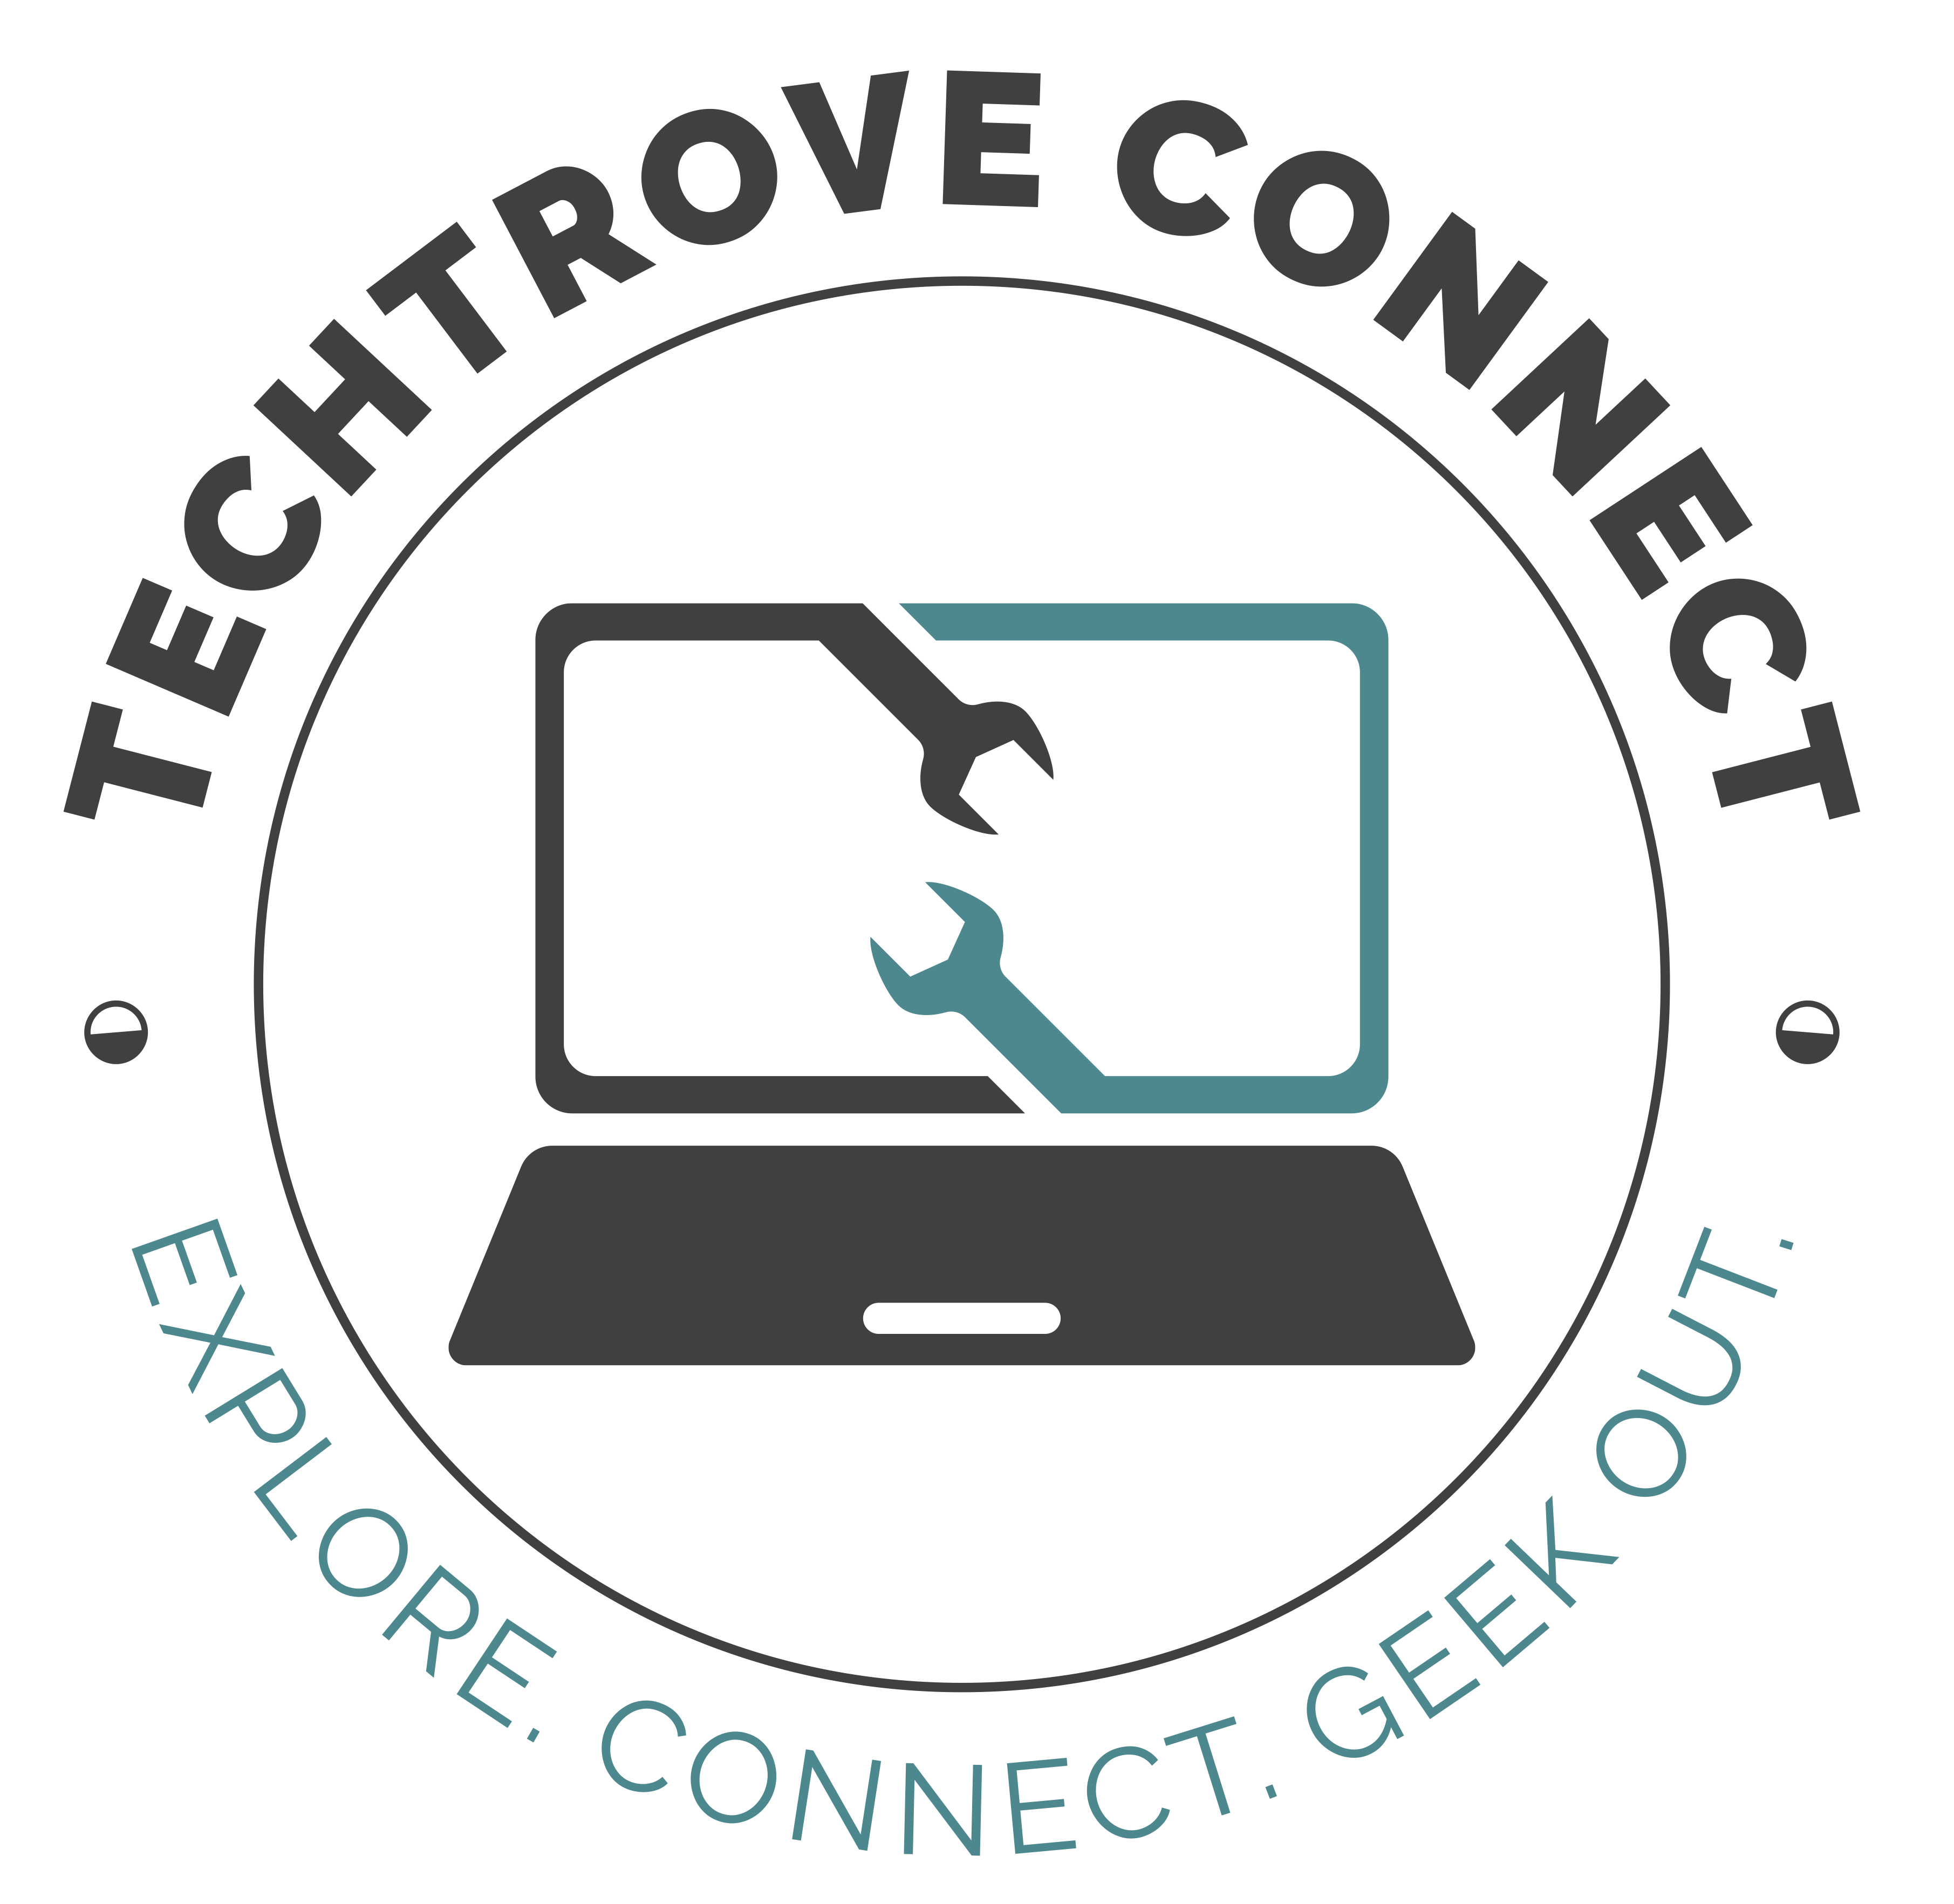 TechTrove Connect